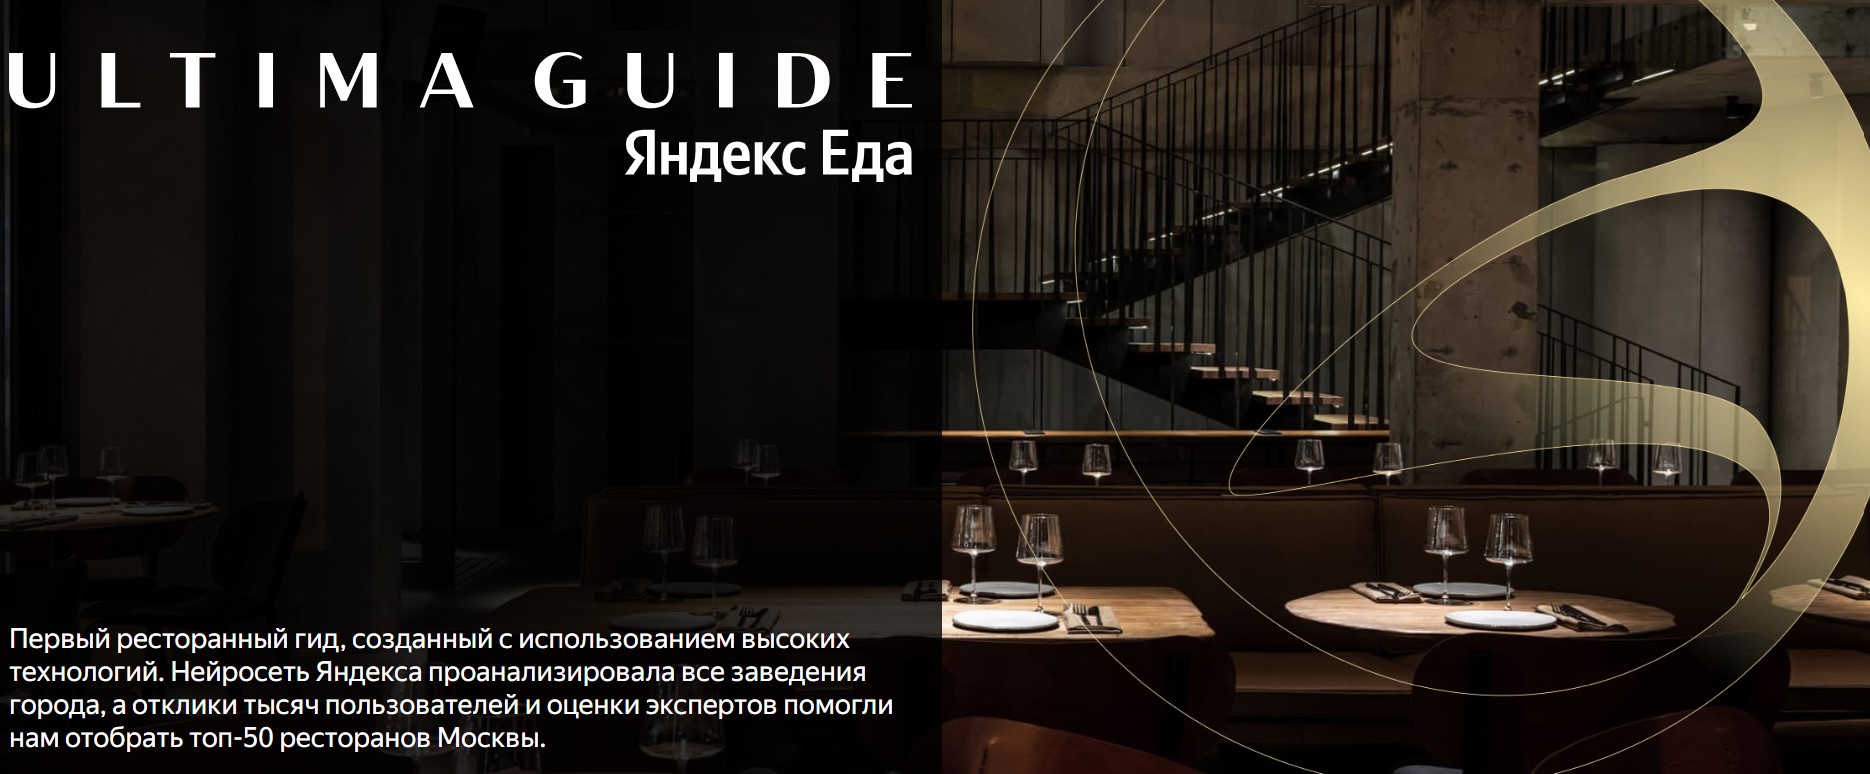 «Яндекс Еда» представляет собственный ресторанный гид (фото 1)